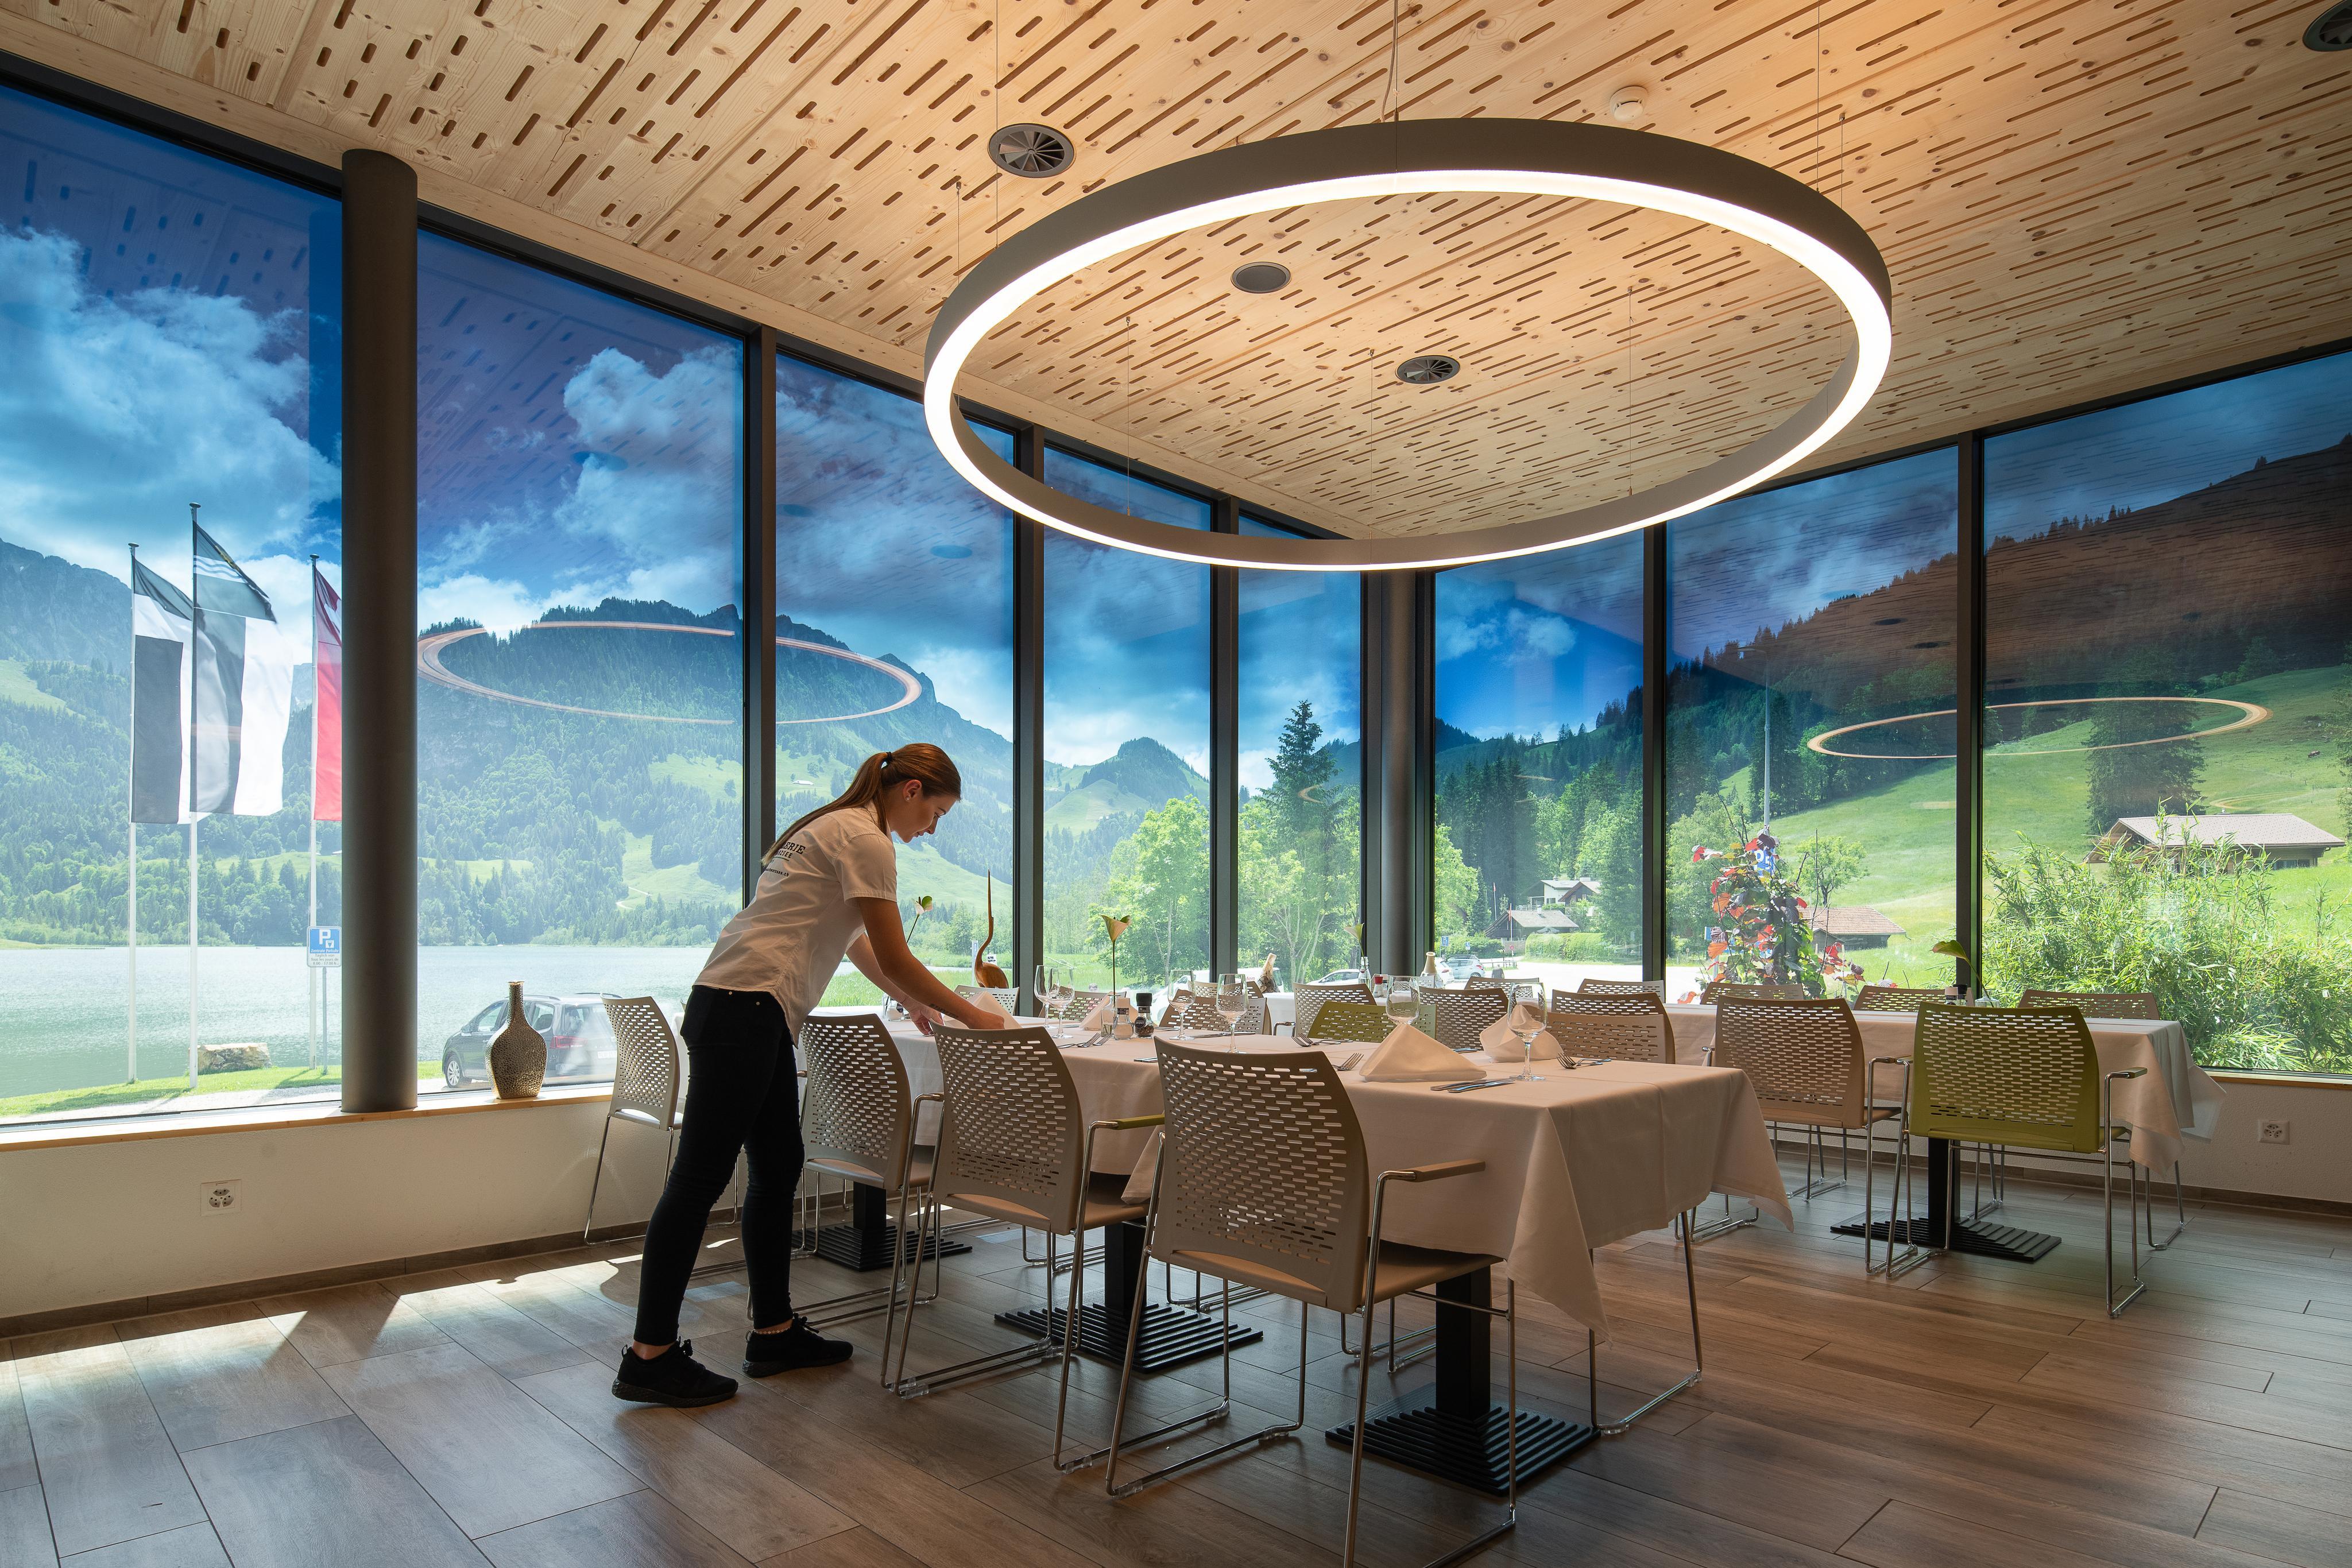 Hostellerie am Schwarzee, a restaurant in Schwarzee, Switzerland